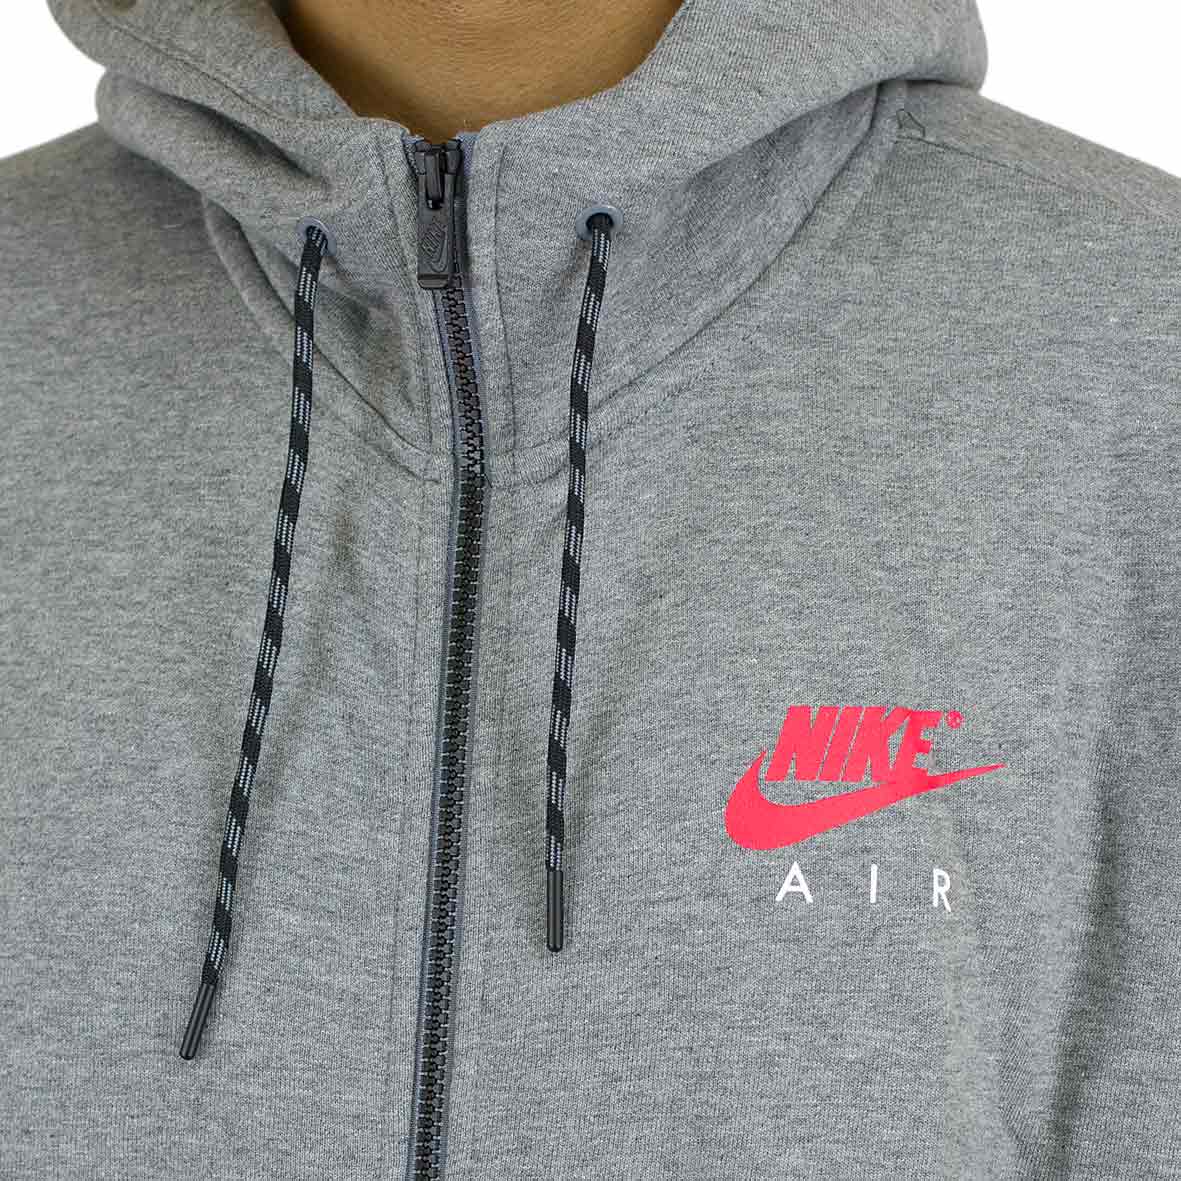 ☆ Nike Zip-Hoody Air grau/rot - hier bestellen!